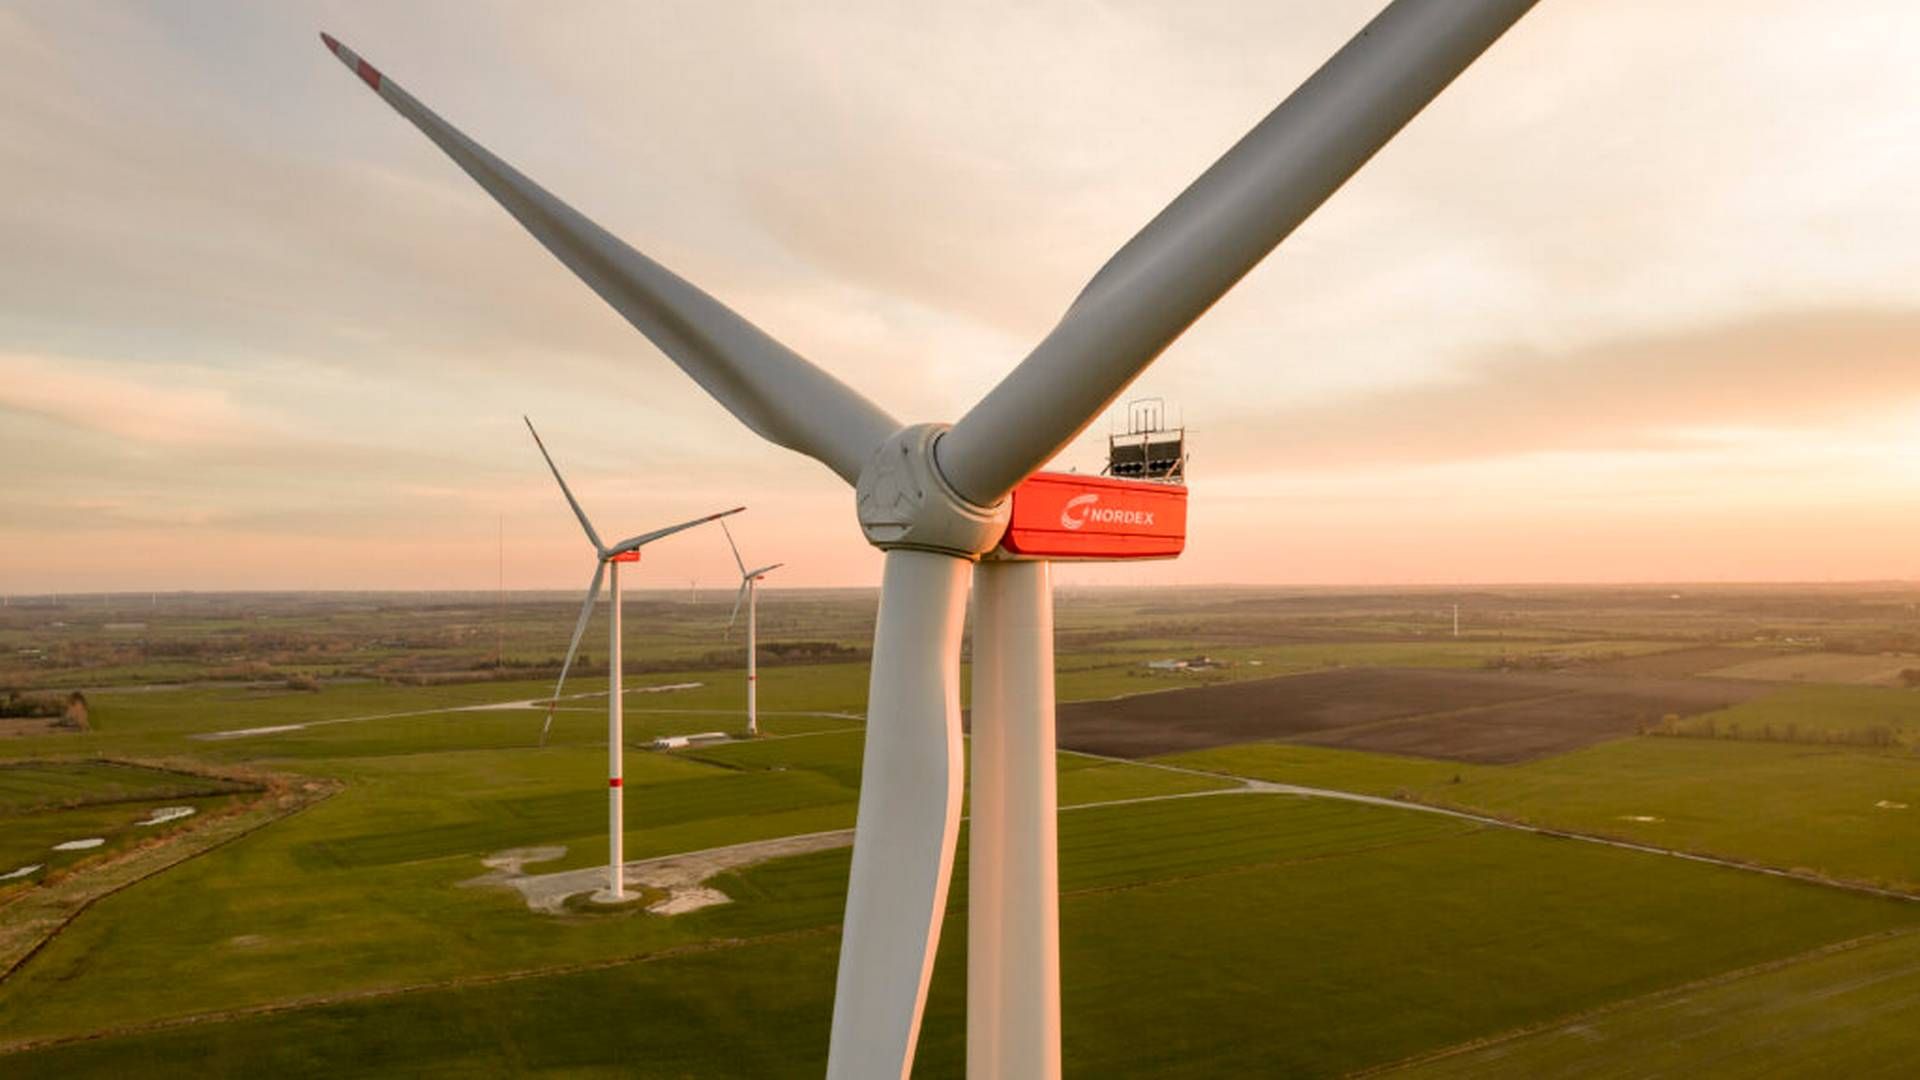 "Ordrerne kommer ikke rigtigt endnu, men jeg vil stadig gerne have, at producenterne af vindmøller fastholder kapaciteten nu og om nødvendigt udvider den,” siger den tyske økonomi- og klimaminister. | Foto: Nordex